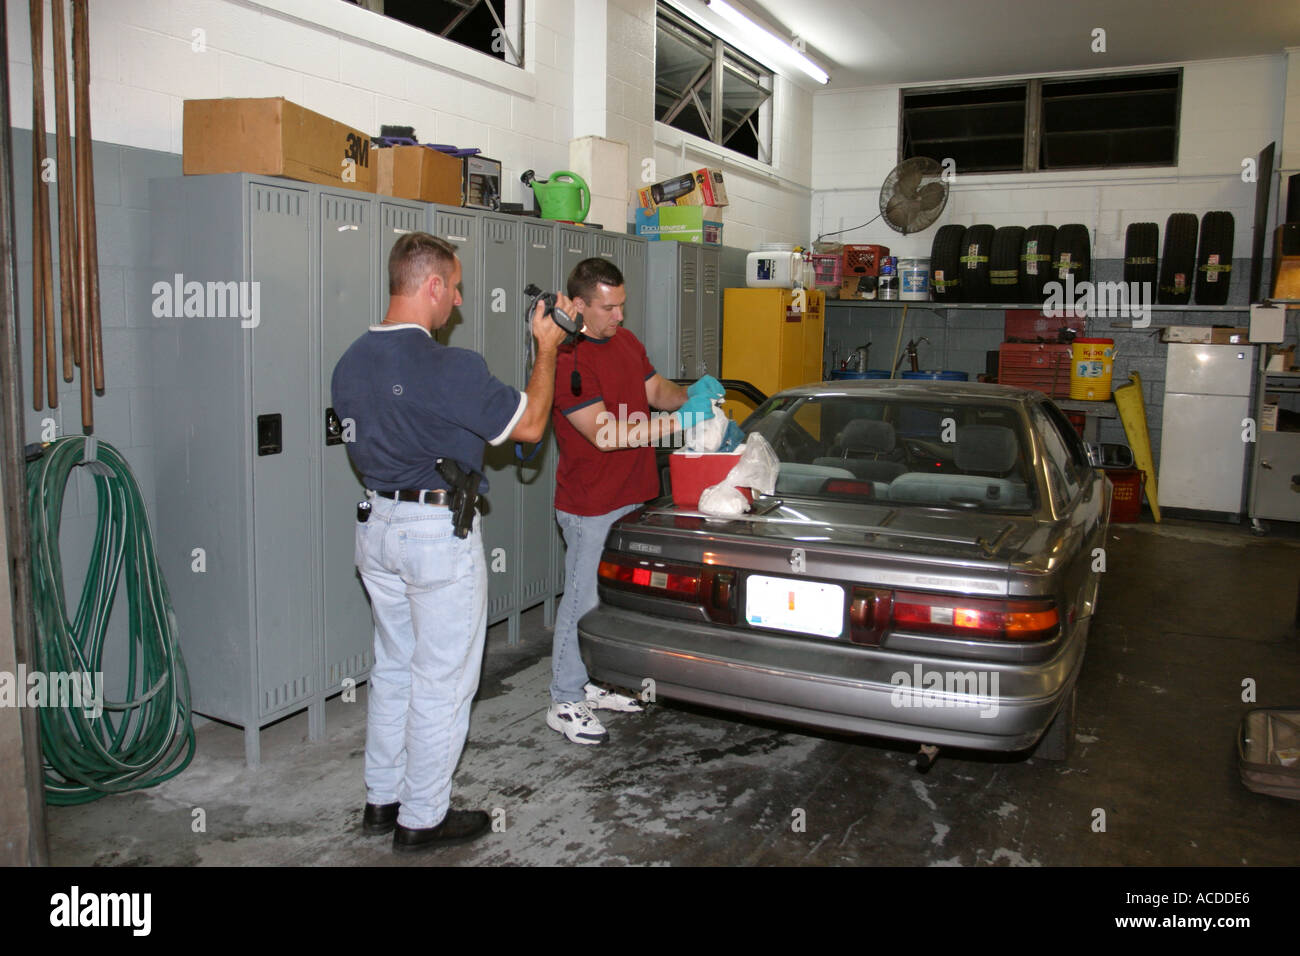 La polizia ricerca veicolo alla ricerca di stupefacenti. Oltre un chilo di cocaina in polvere si trova nascosto in auto. Foto Stock